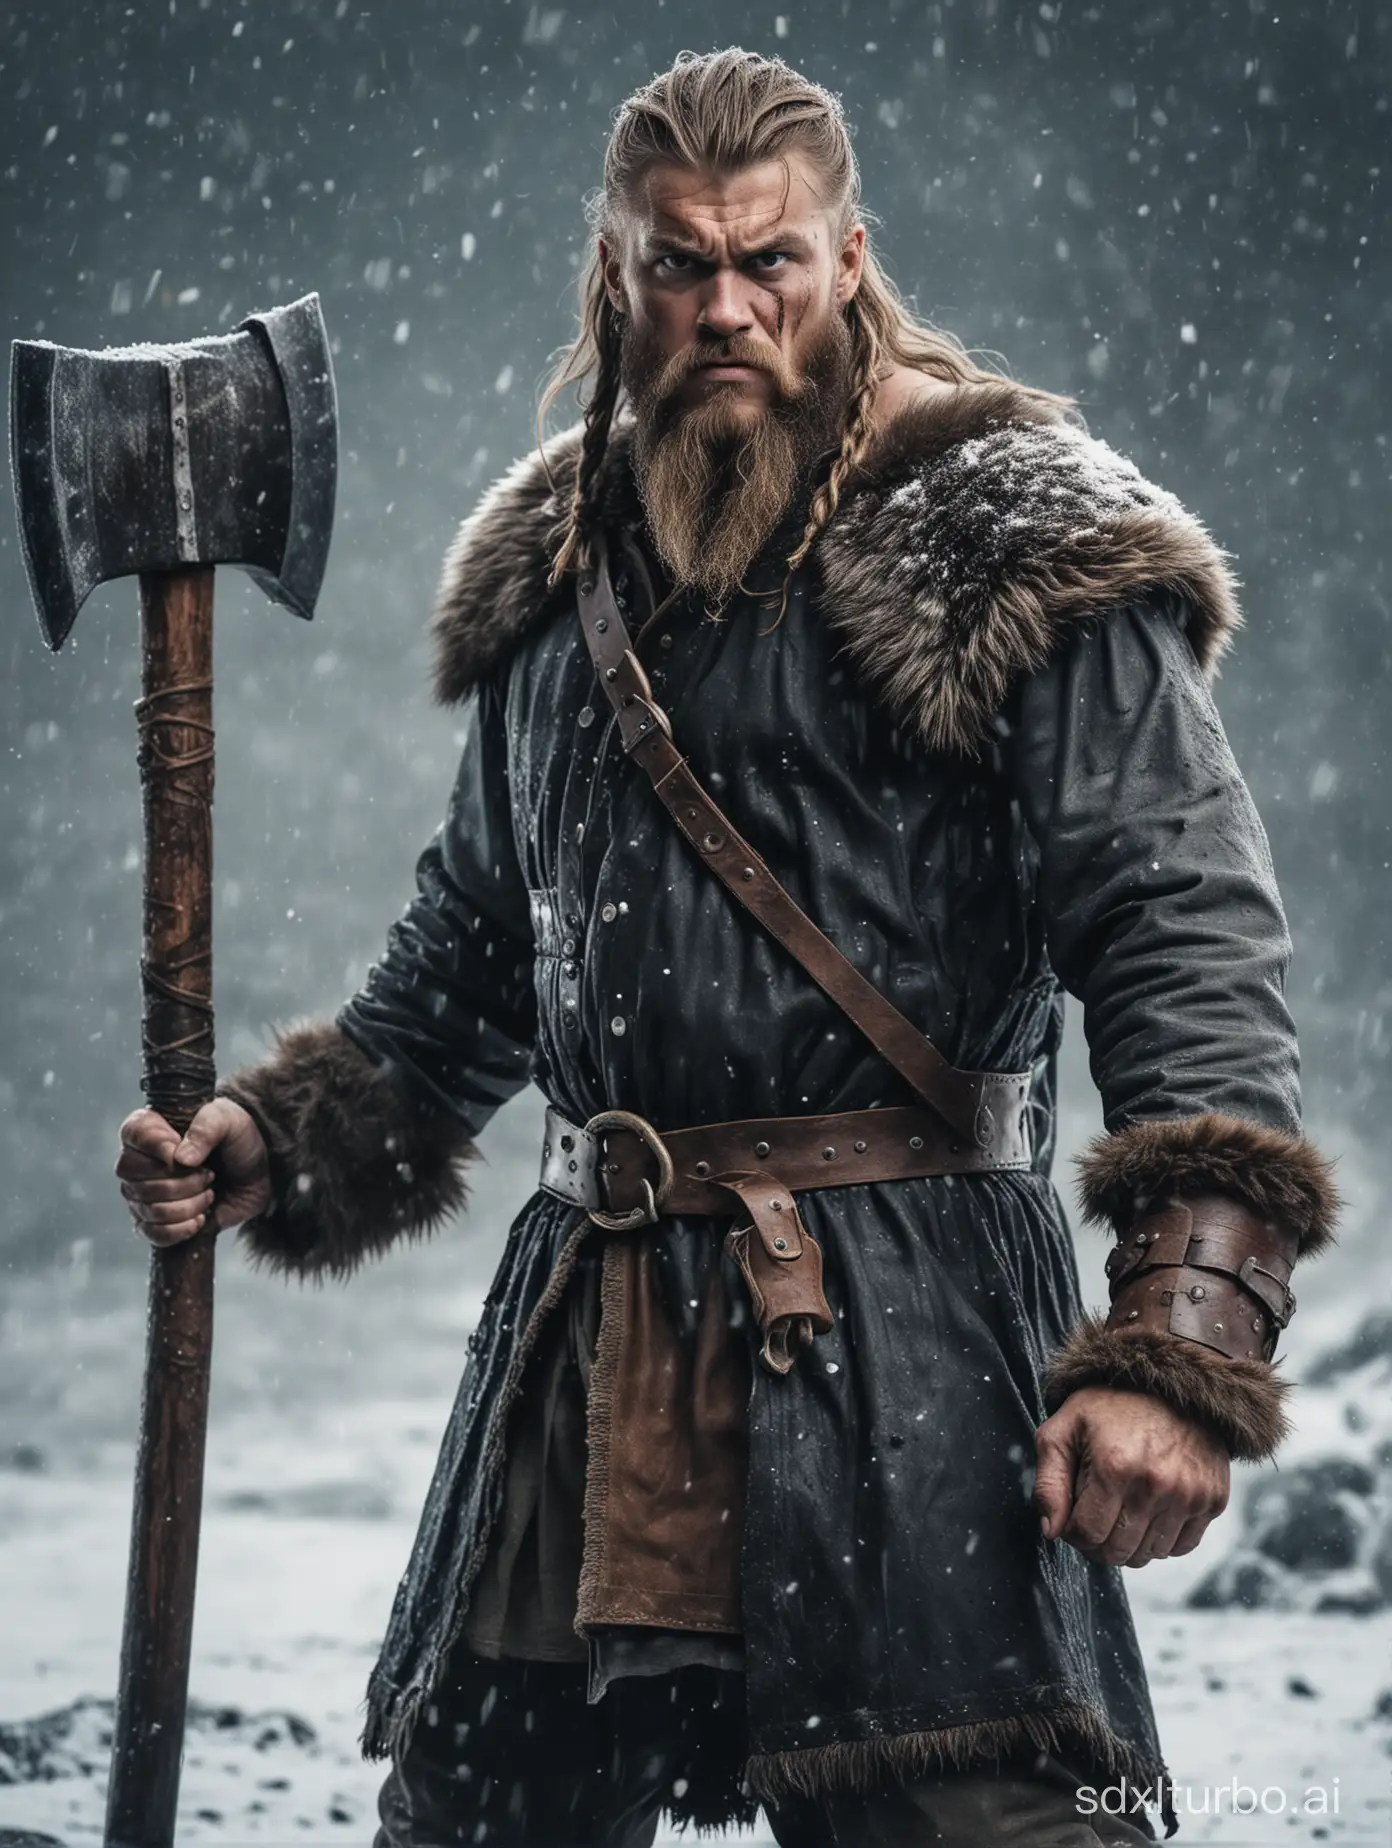 Fierce-Viking-Warrior-with-DoubleEdged-Axe-in-Wintry-Landscape